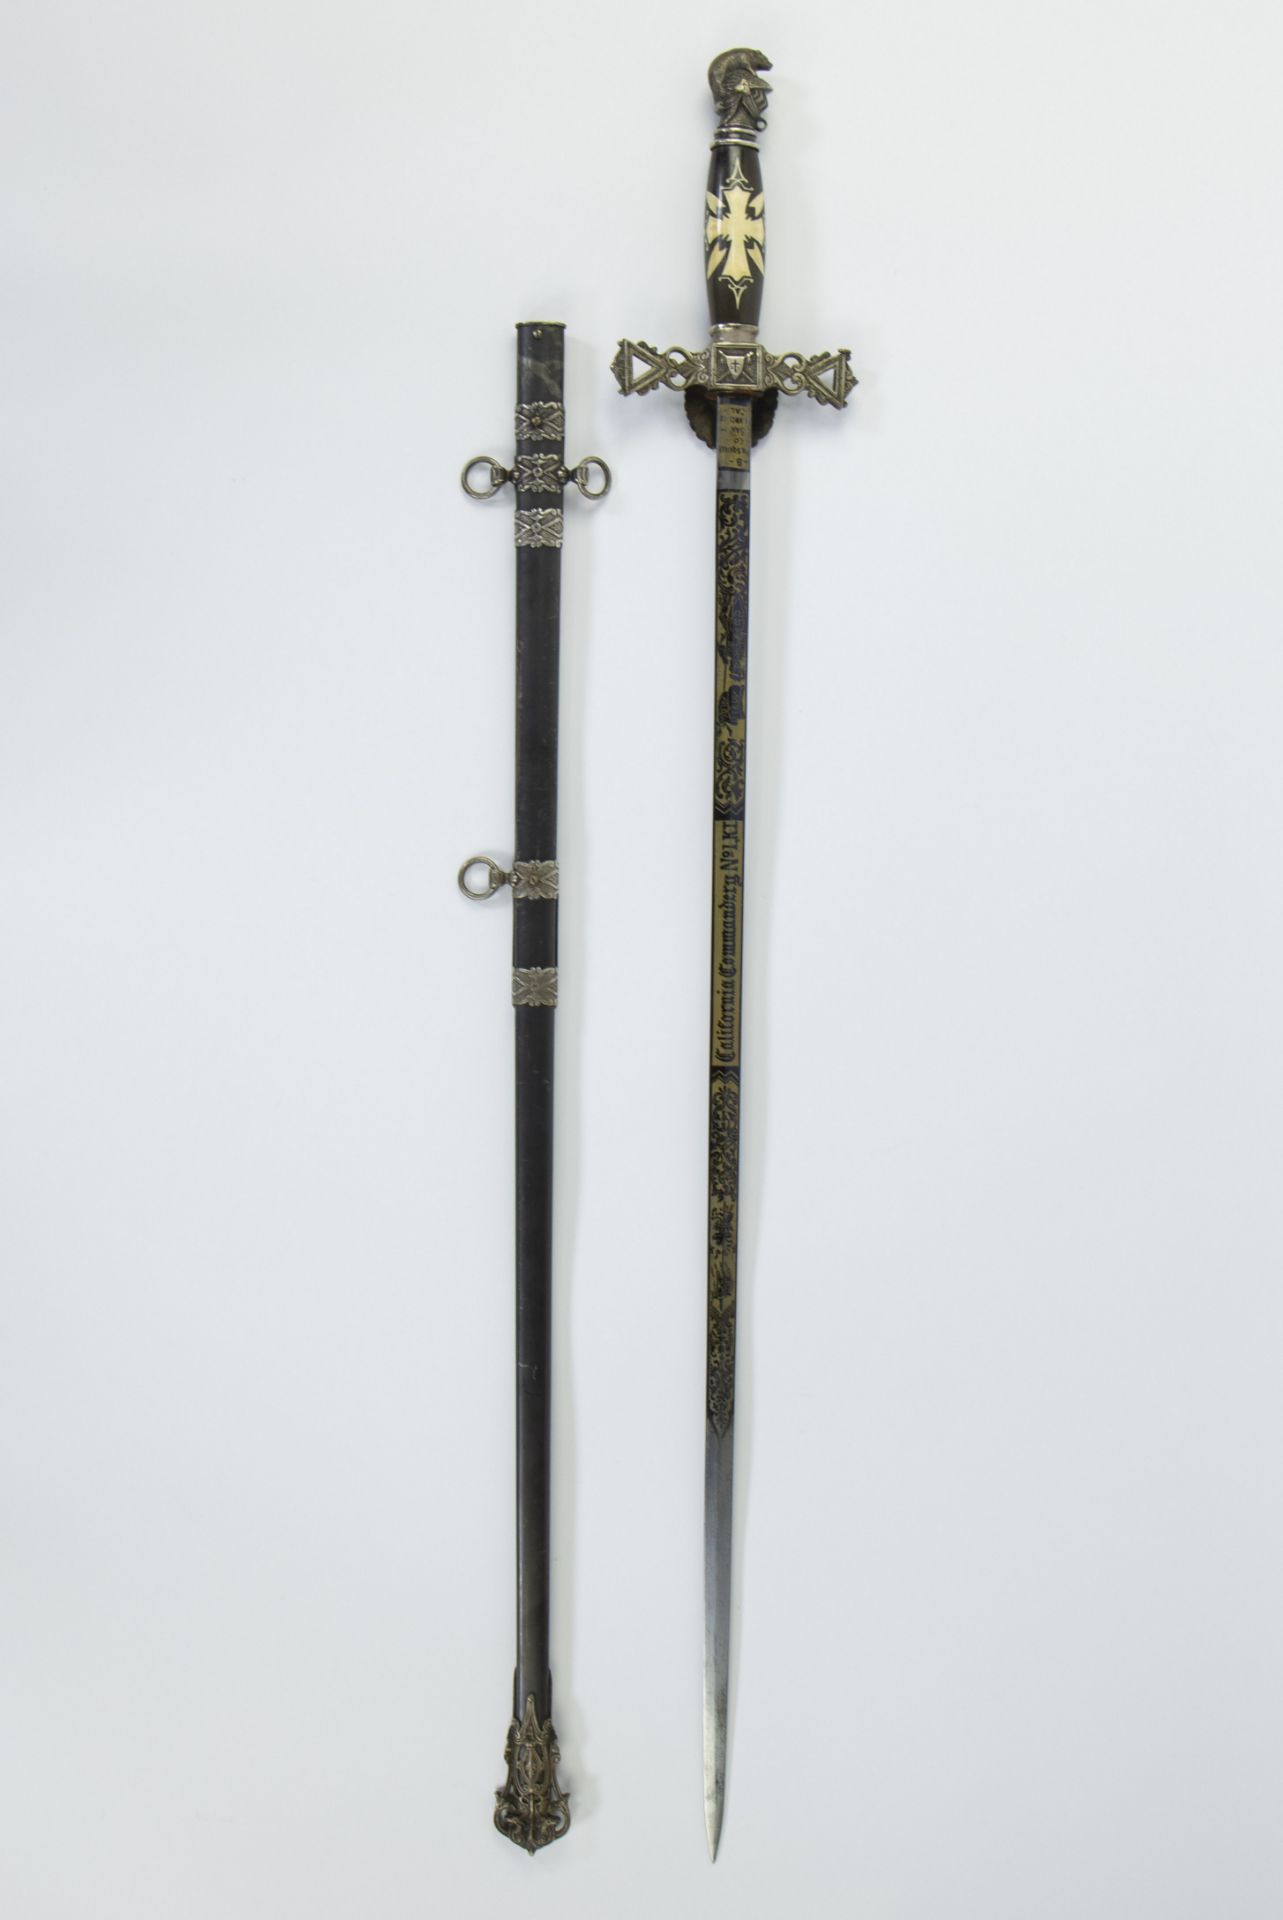 Lodge sword USA with name California John Robertson - Image 4 of 4